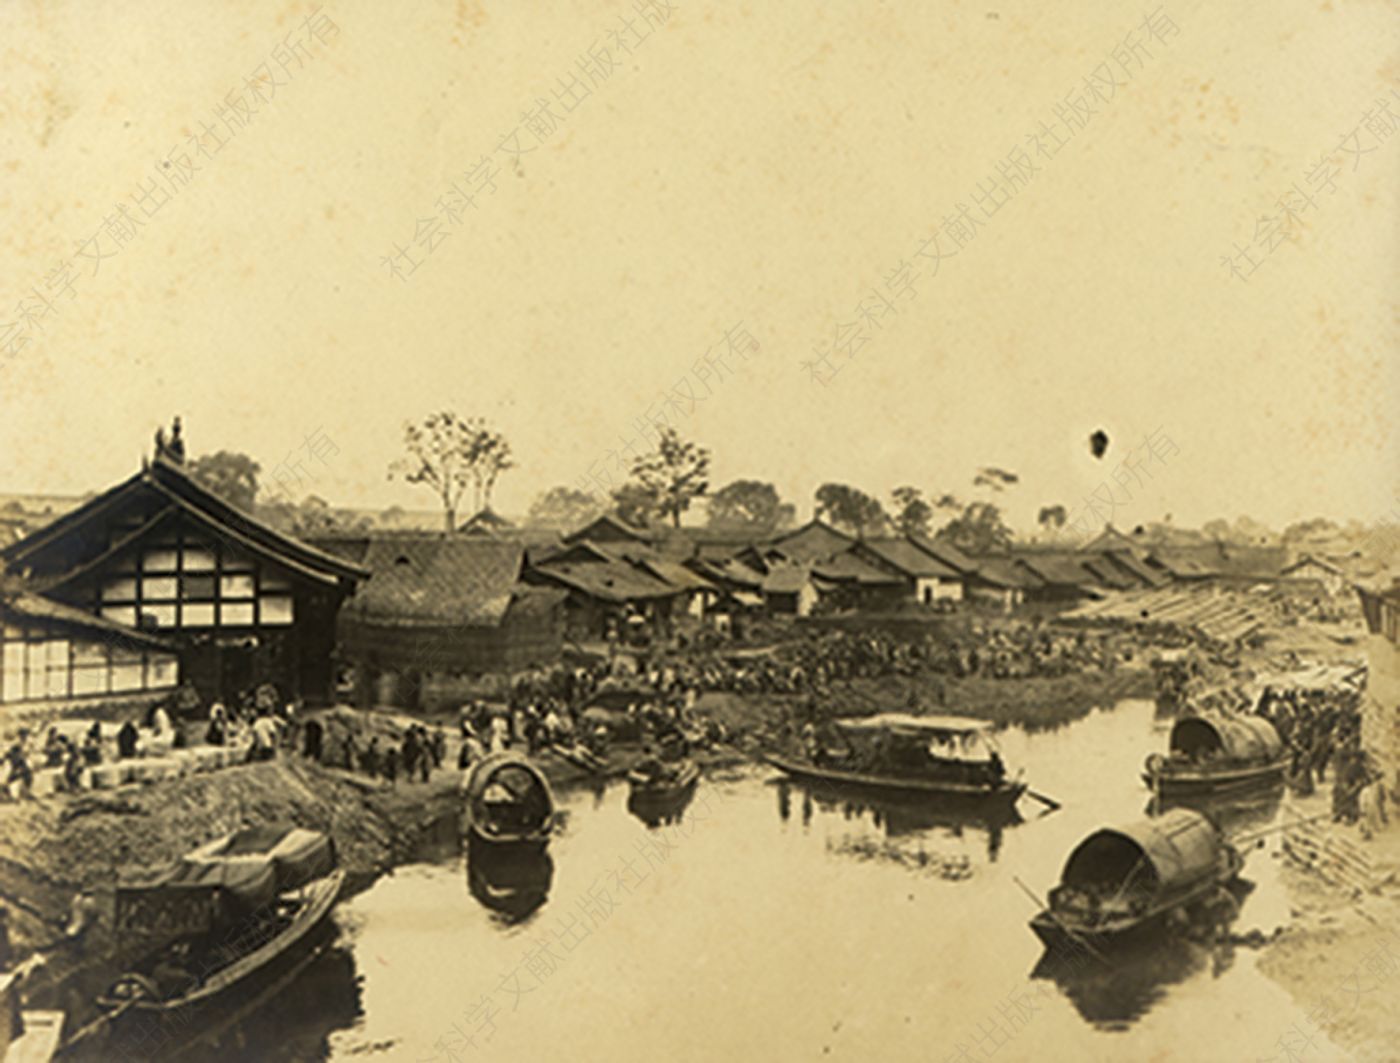 成都的码头，约1905年。